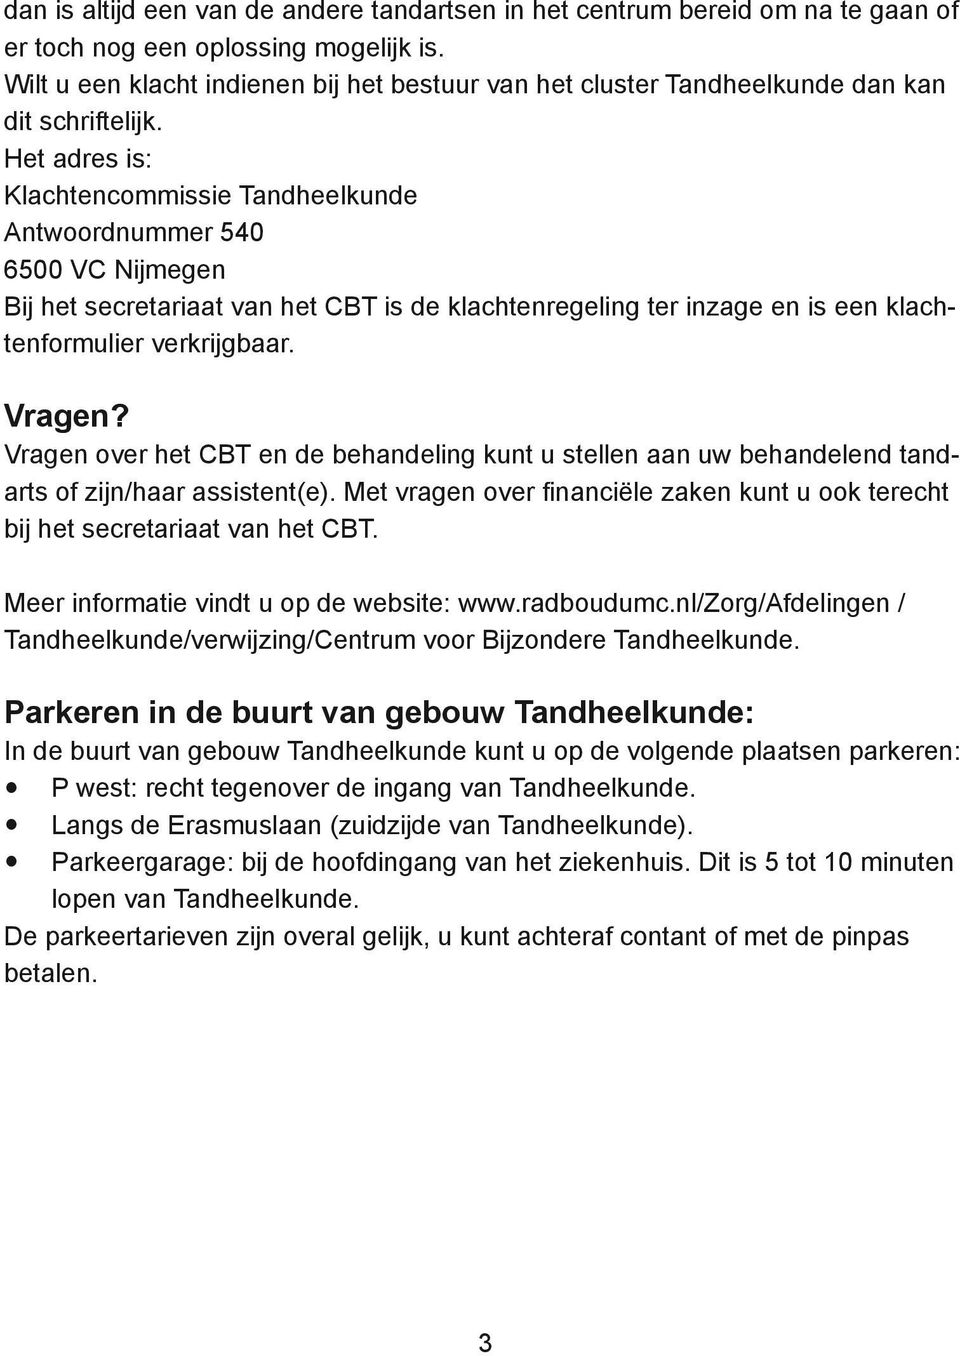 Het adres is: Klachtencommissie Tandheelkunde Antwoordnummer 540 6500 VC Nijmegen Bij het secretariaat van het CBT is de klachtenregeling ter inzage en is een klachtenformulier verkrijgbaar. Vragen?